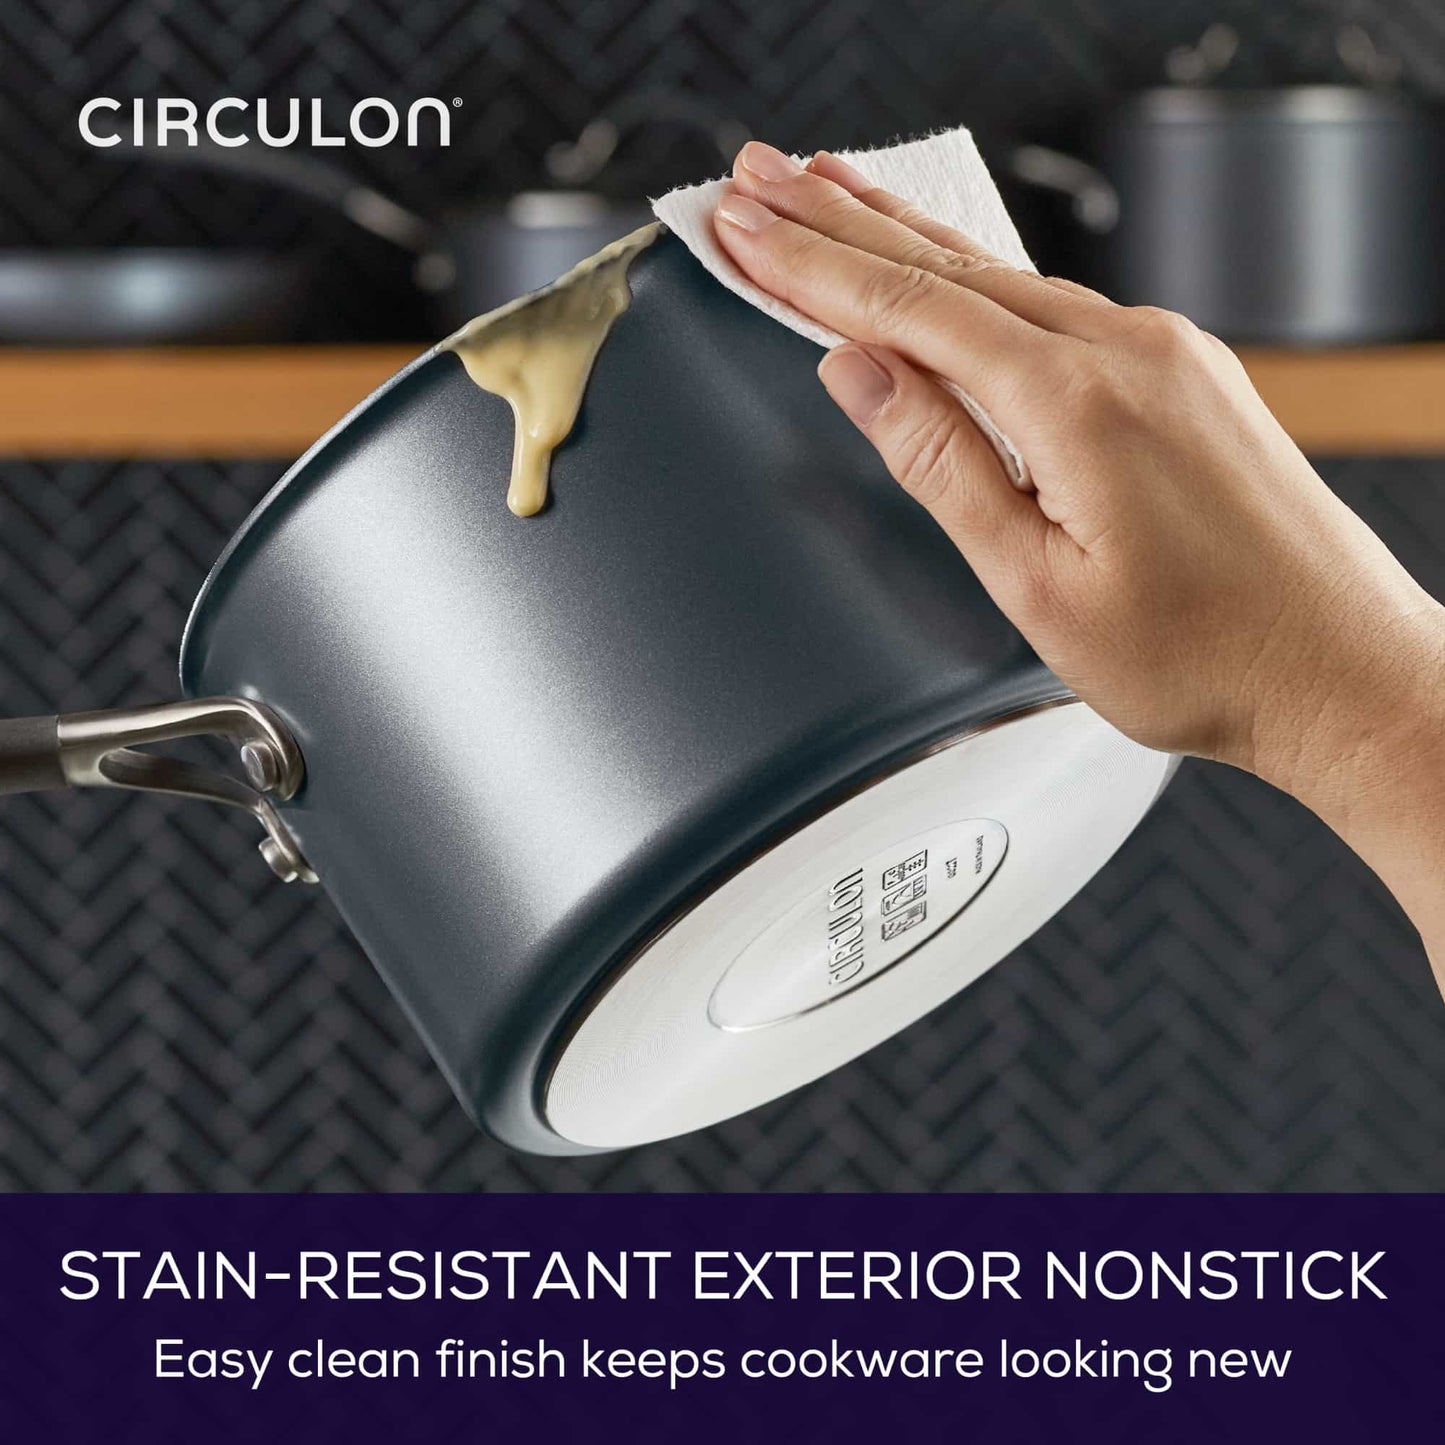 Circulon ScratchDefense A1 Nonstick Induction 8 Piece Cookware Set